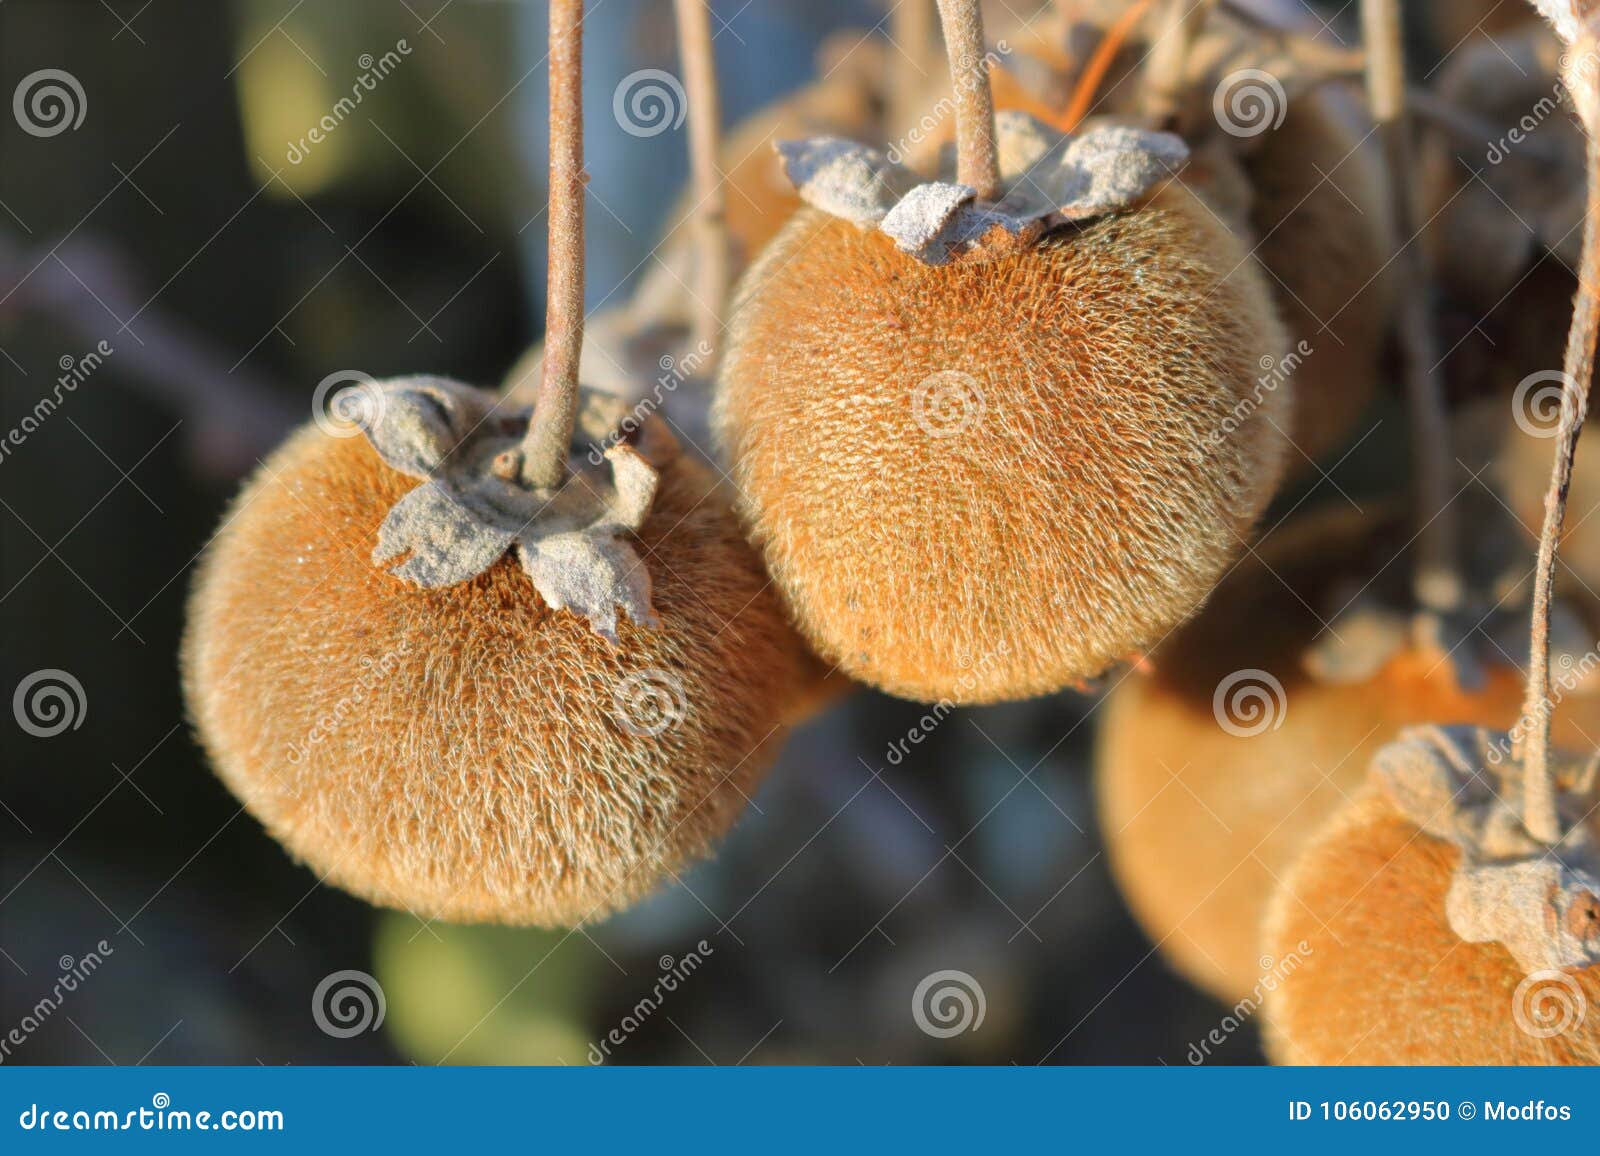 شجرة الفاكهة sycamore